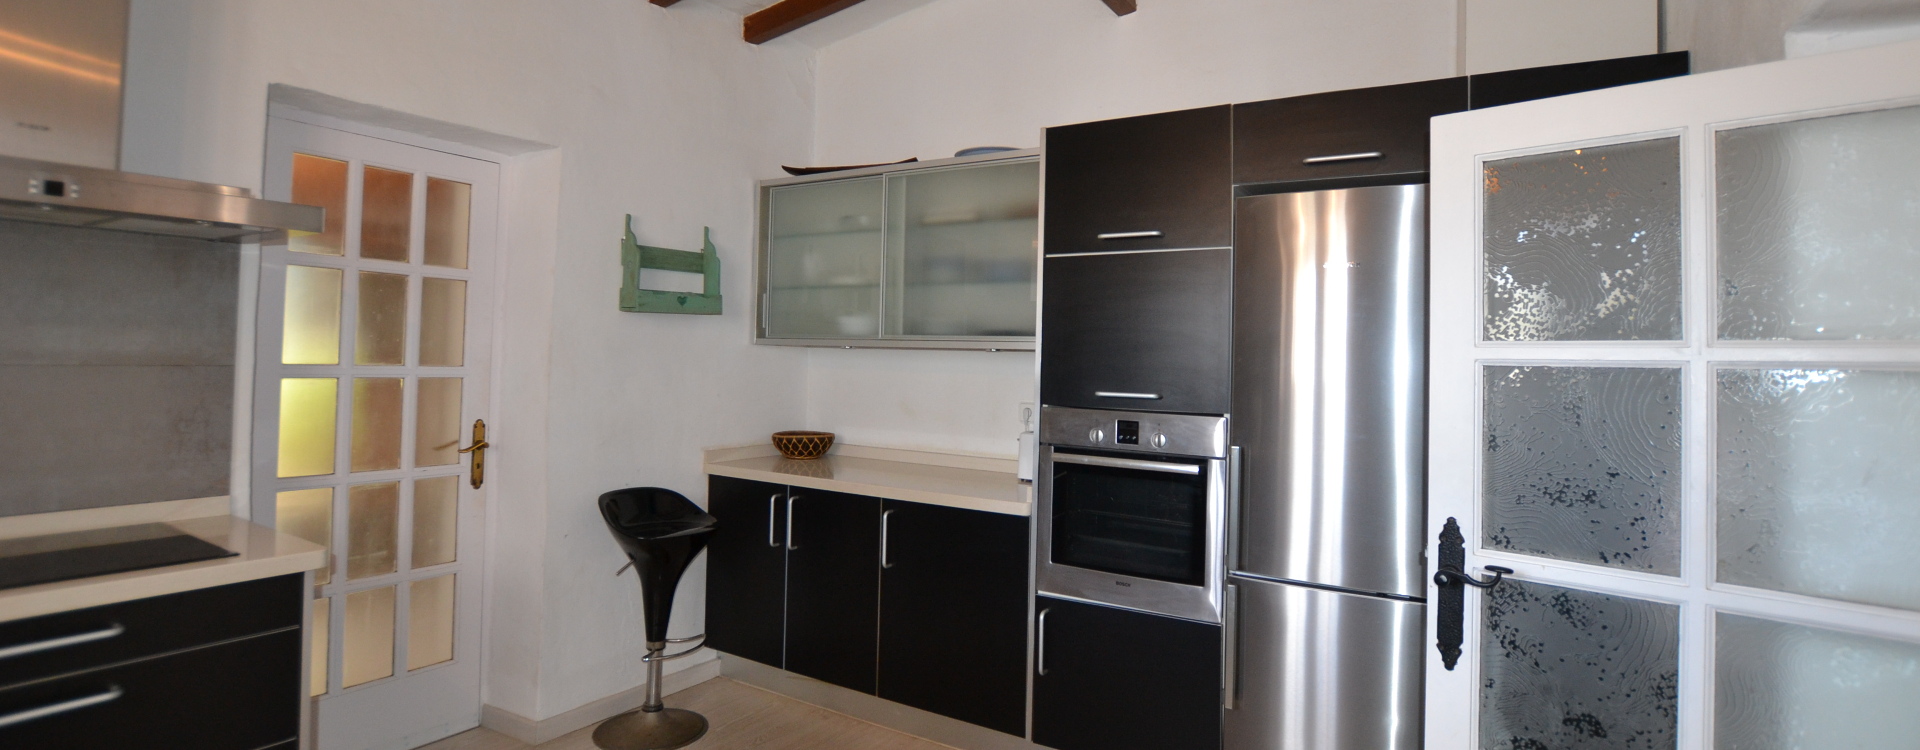 Villa Can Massinet Ibiza for rent